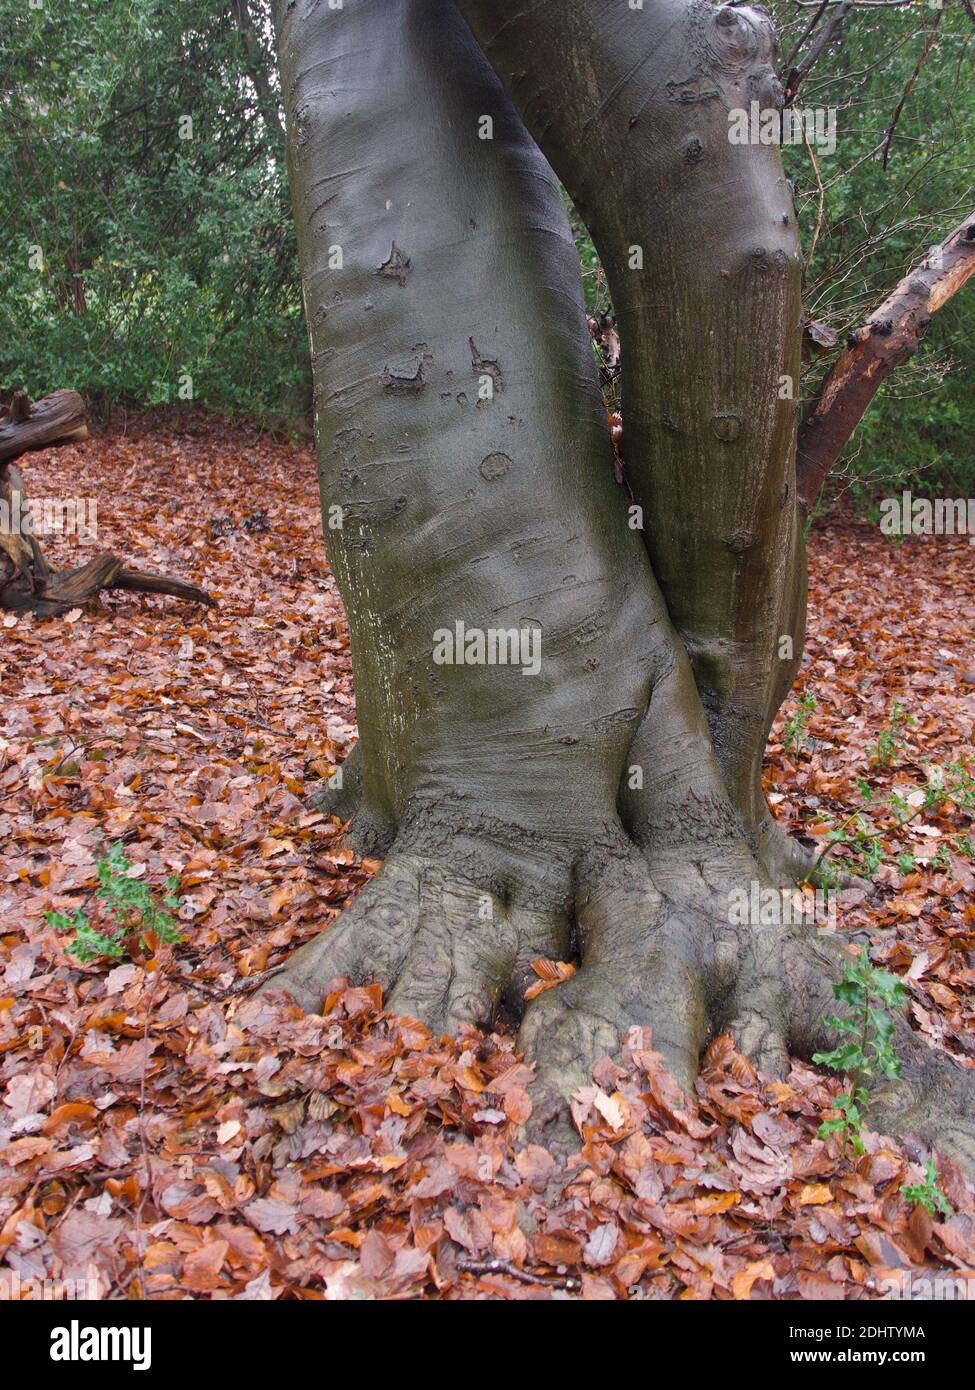 Formazione insolita del tronco dell'albero che assomiglia agli elefanti gamba e piede. Circondato da foglie autunnali marroni con cespugli verdi sullo sfondo. Foto di alta qualità. Foto Stock